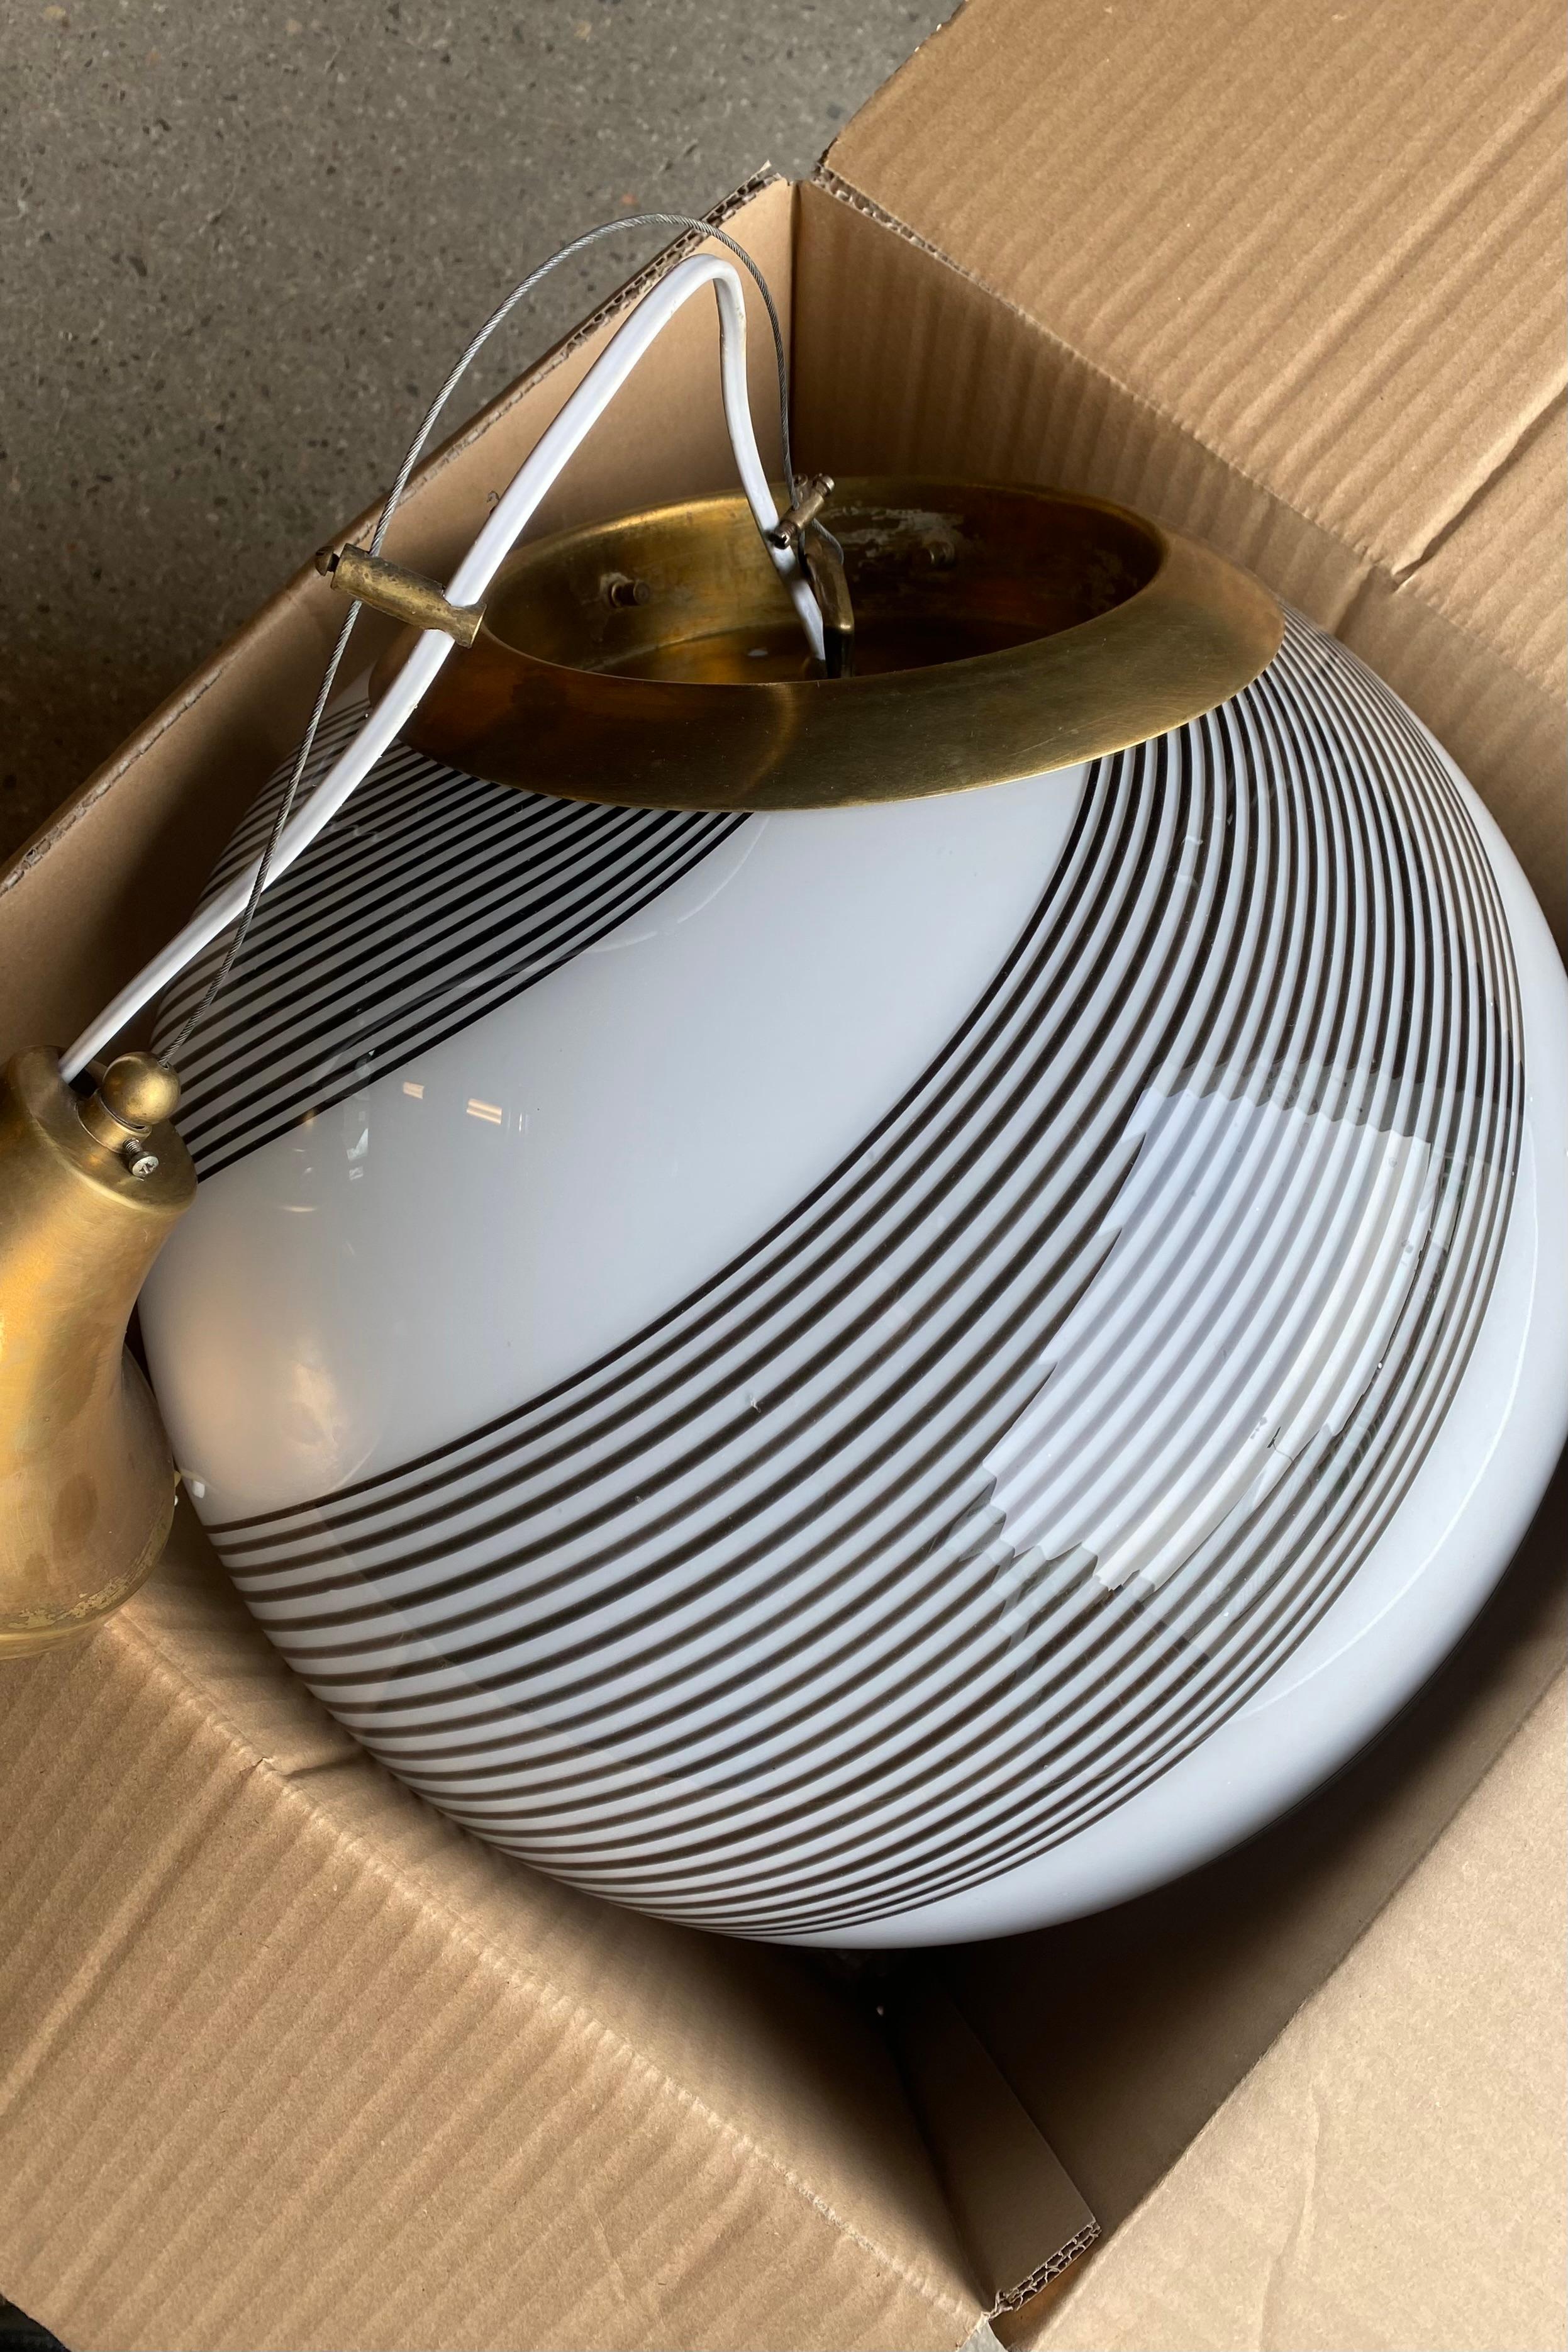 Große hängende Murano-Deckenlampe im Vintage-Stil. Das Glas ist mundgeblasen und hat eine runde Form mit einem schönen Wirbelmuster. Handgefertigt in Italien, 1970er Jahre, mit verstellbarer Messingaufhängung.
T: 40 cm

